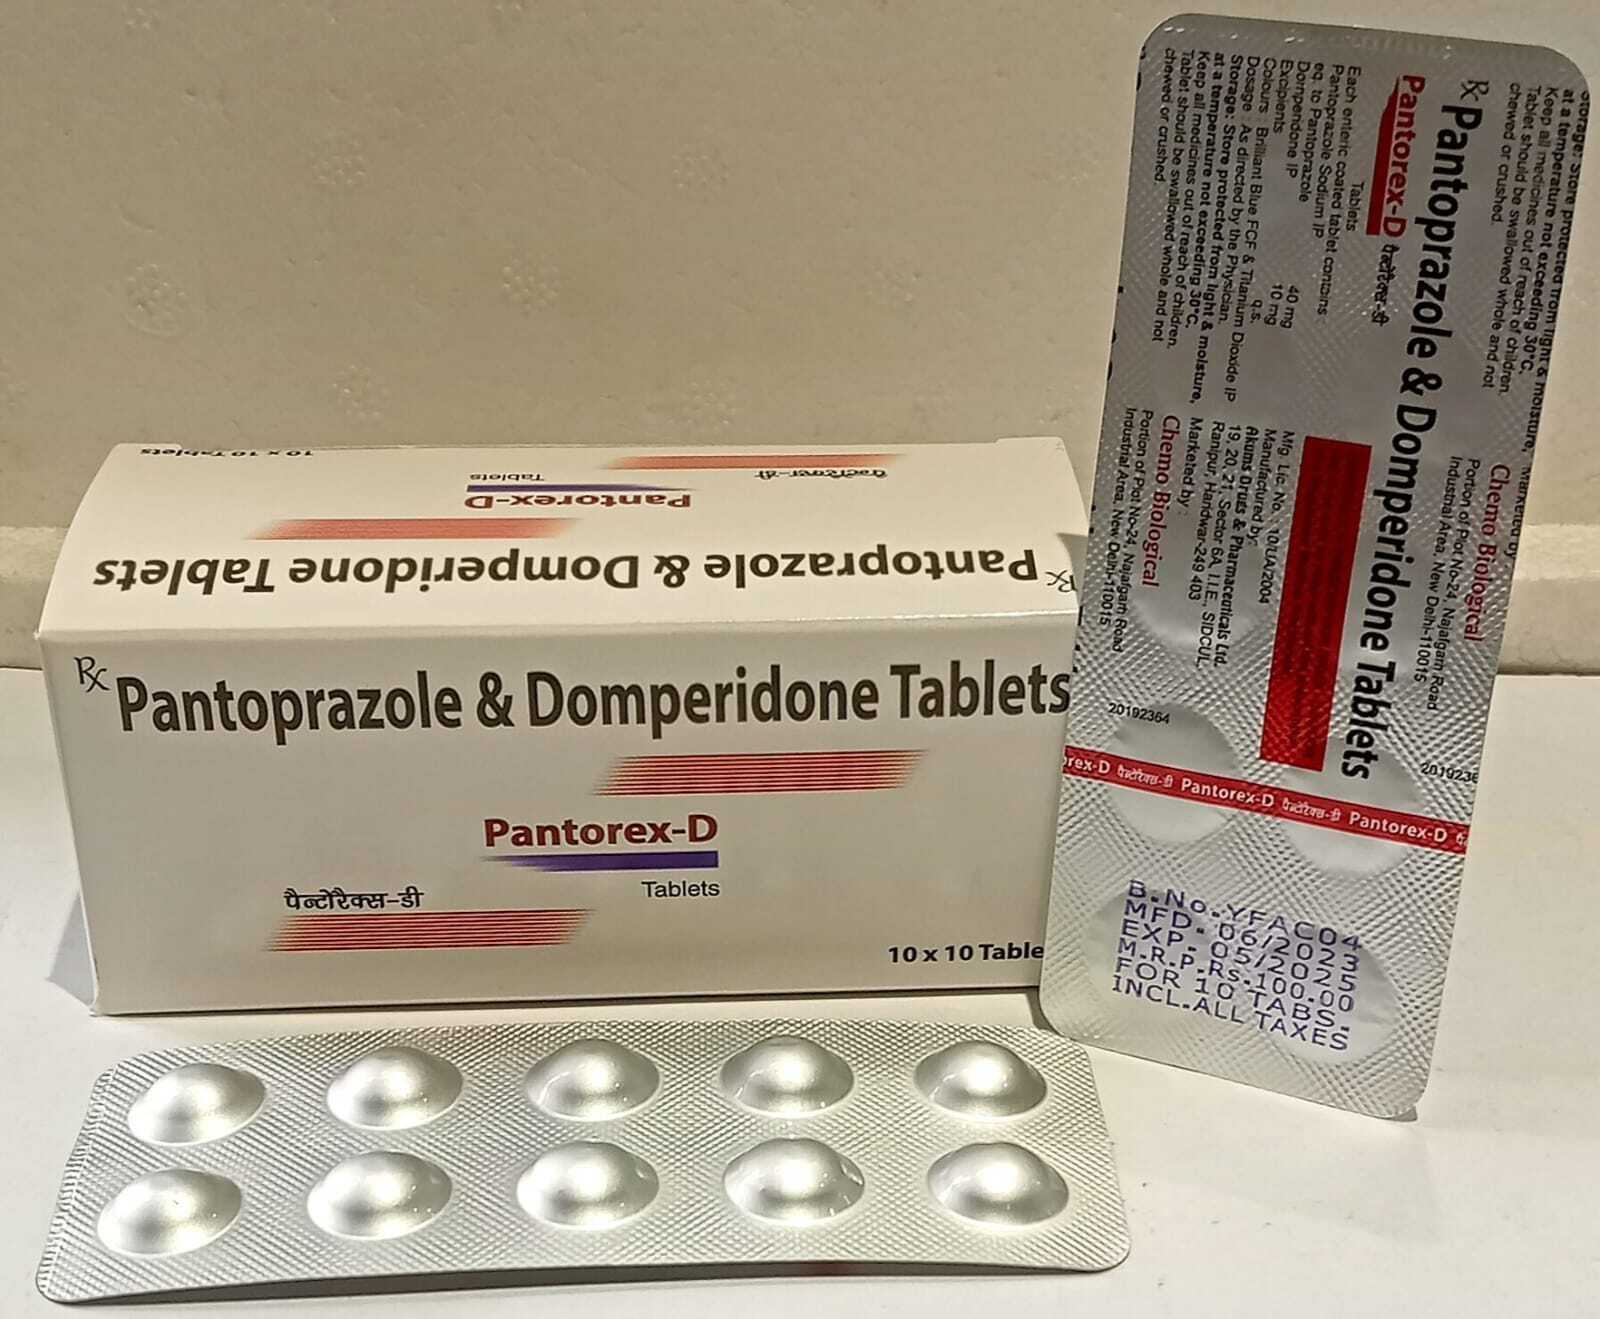 Pantoprazole sodium 40mg + domperidone 10mg Tablets